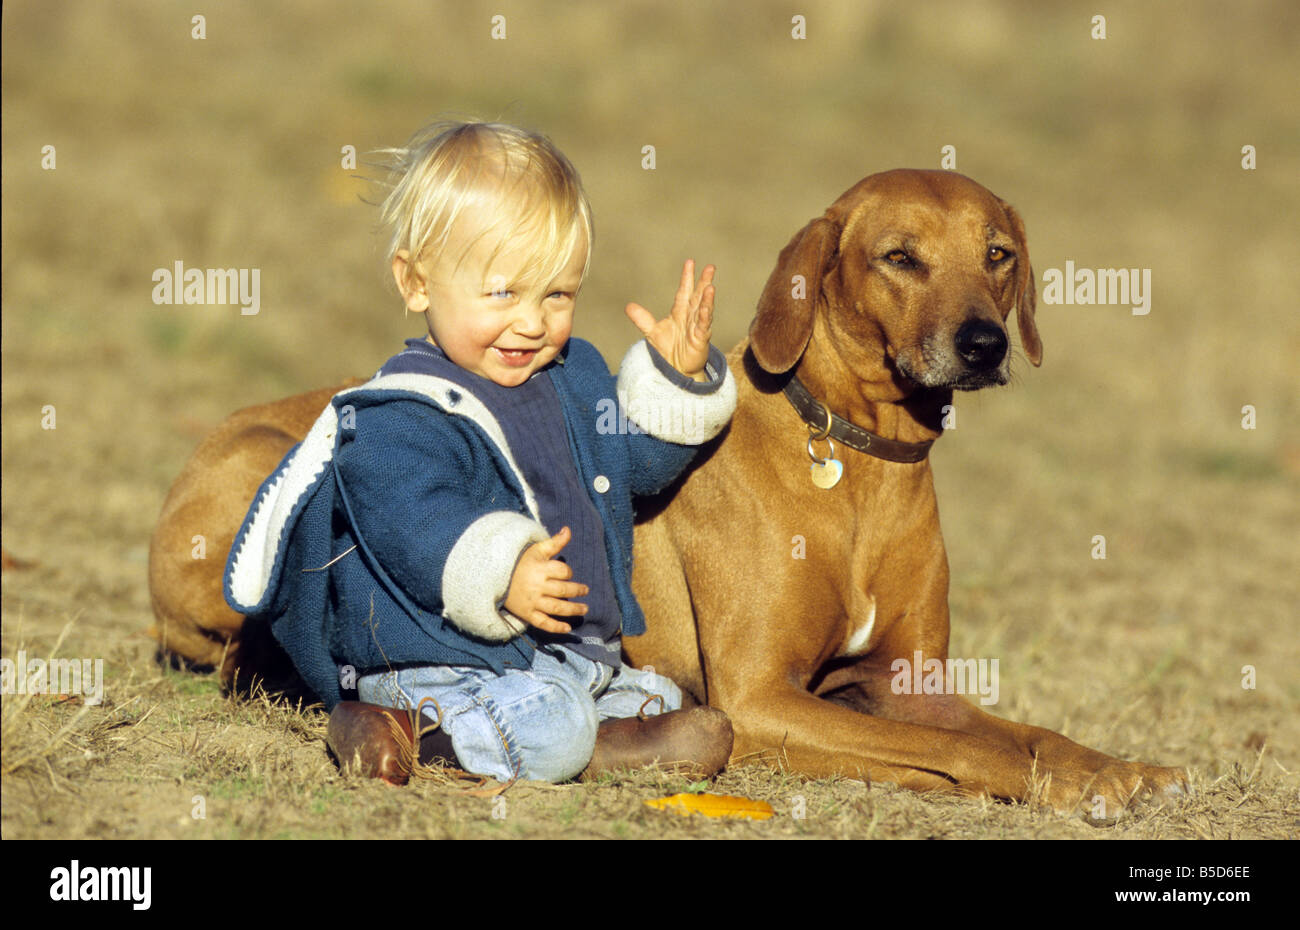 Le Rhodesian Ridgeback (Canis lupus familiaris). Jeune garçon assis à côté de couché chien adulte Banque D'Images